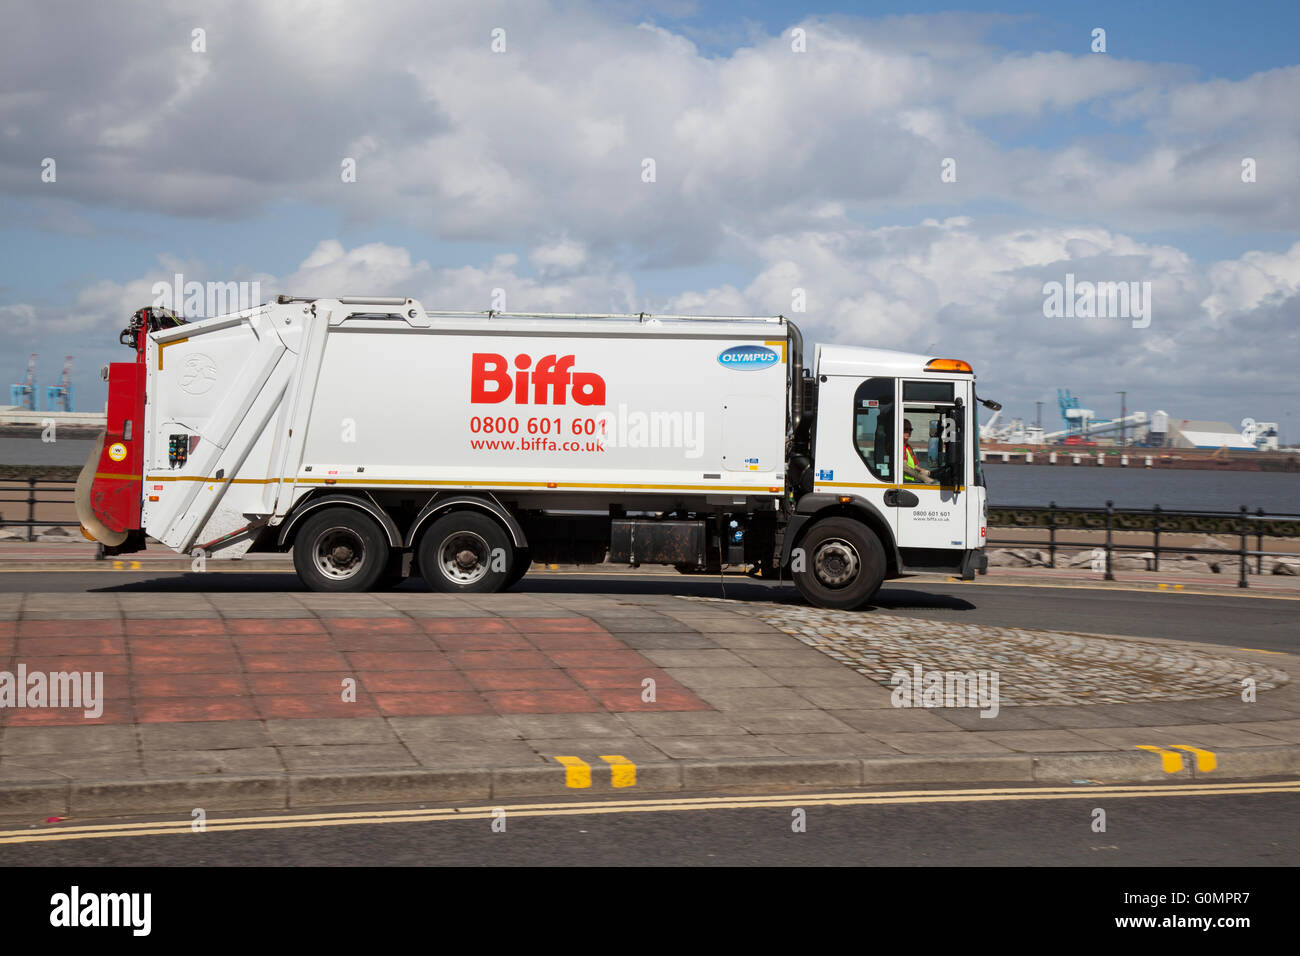 Biffa camion della spazzatura, autocarro, rifiutare il carrello, rifiuti, cestino carrello, spazzatura, città, veicolo, dump, ambiente, riciclaggio, ambientale, pulizia in New Brighton, Wallasey, Wirral, Merseyside, Regno Unito Foto Stock